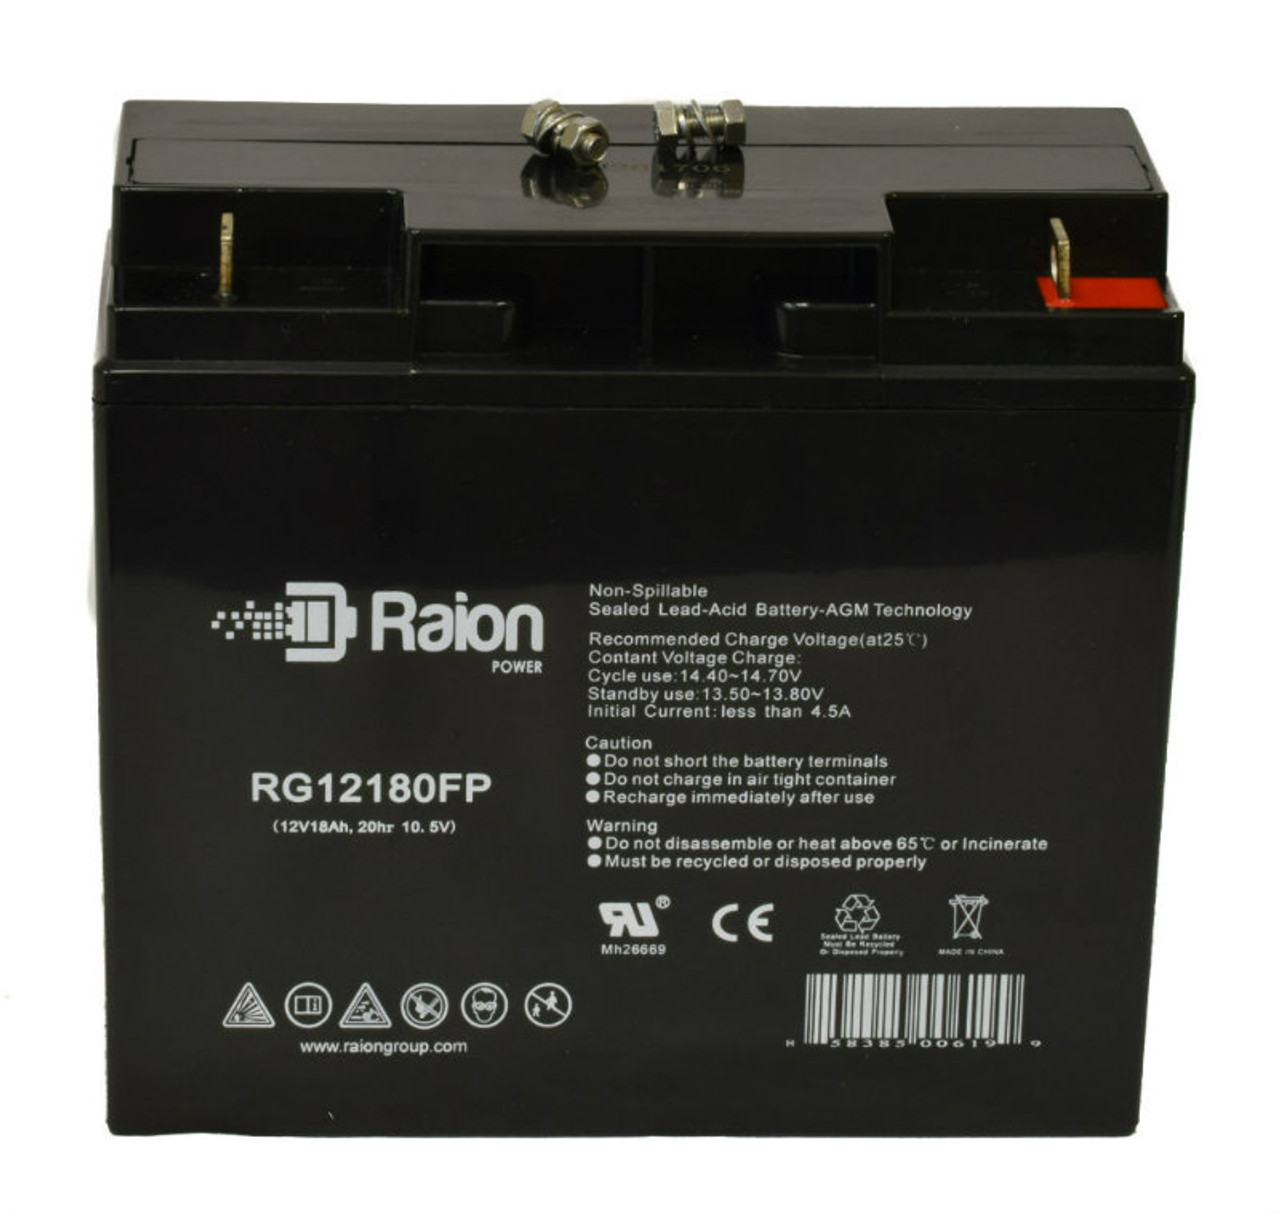 Raion Power RG12180FP 12V 18Ah Lead Acid Battery for NPP Power NP12-20Ah